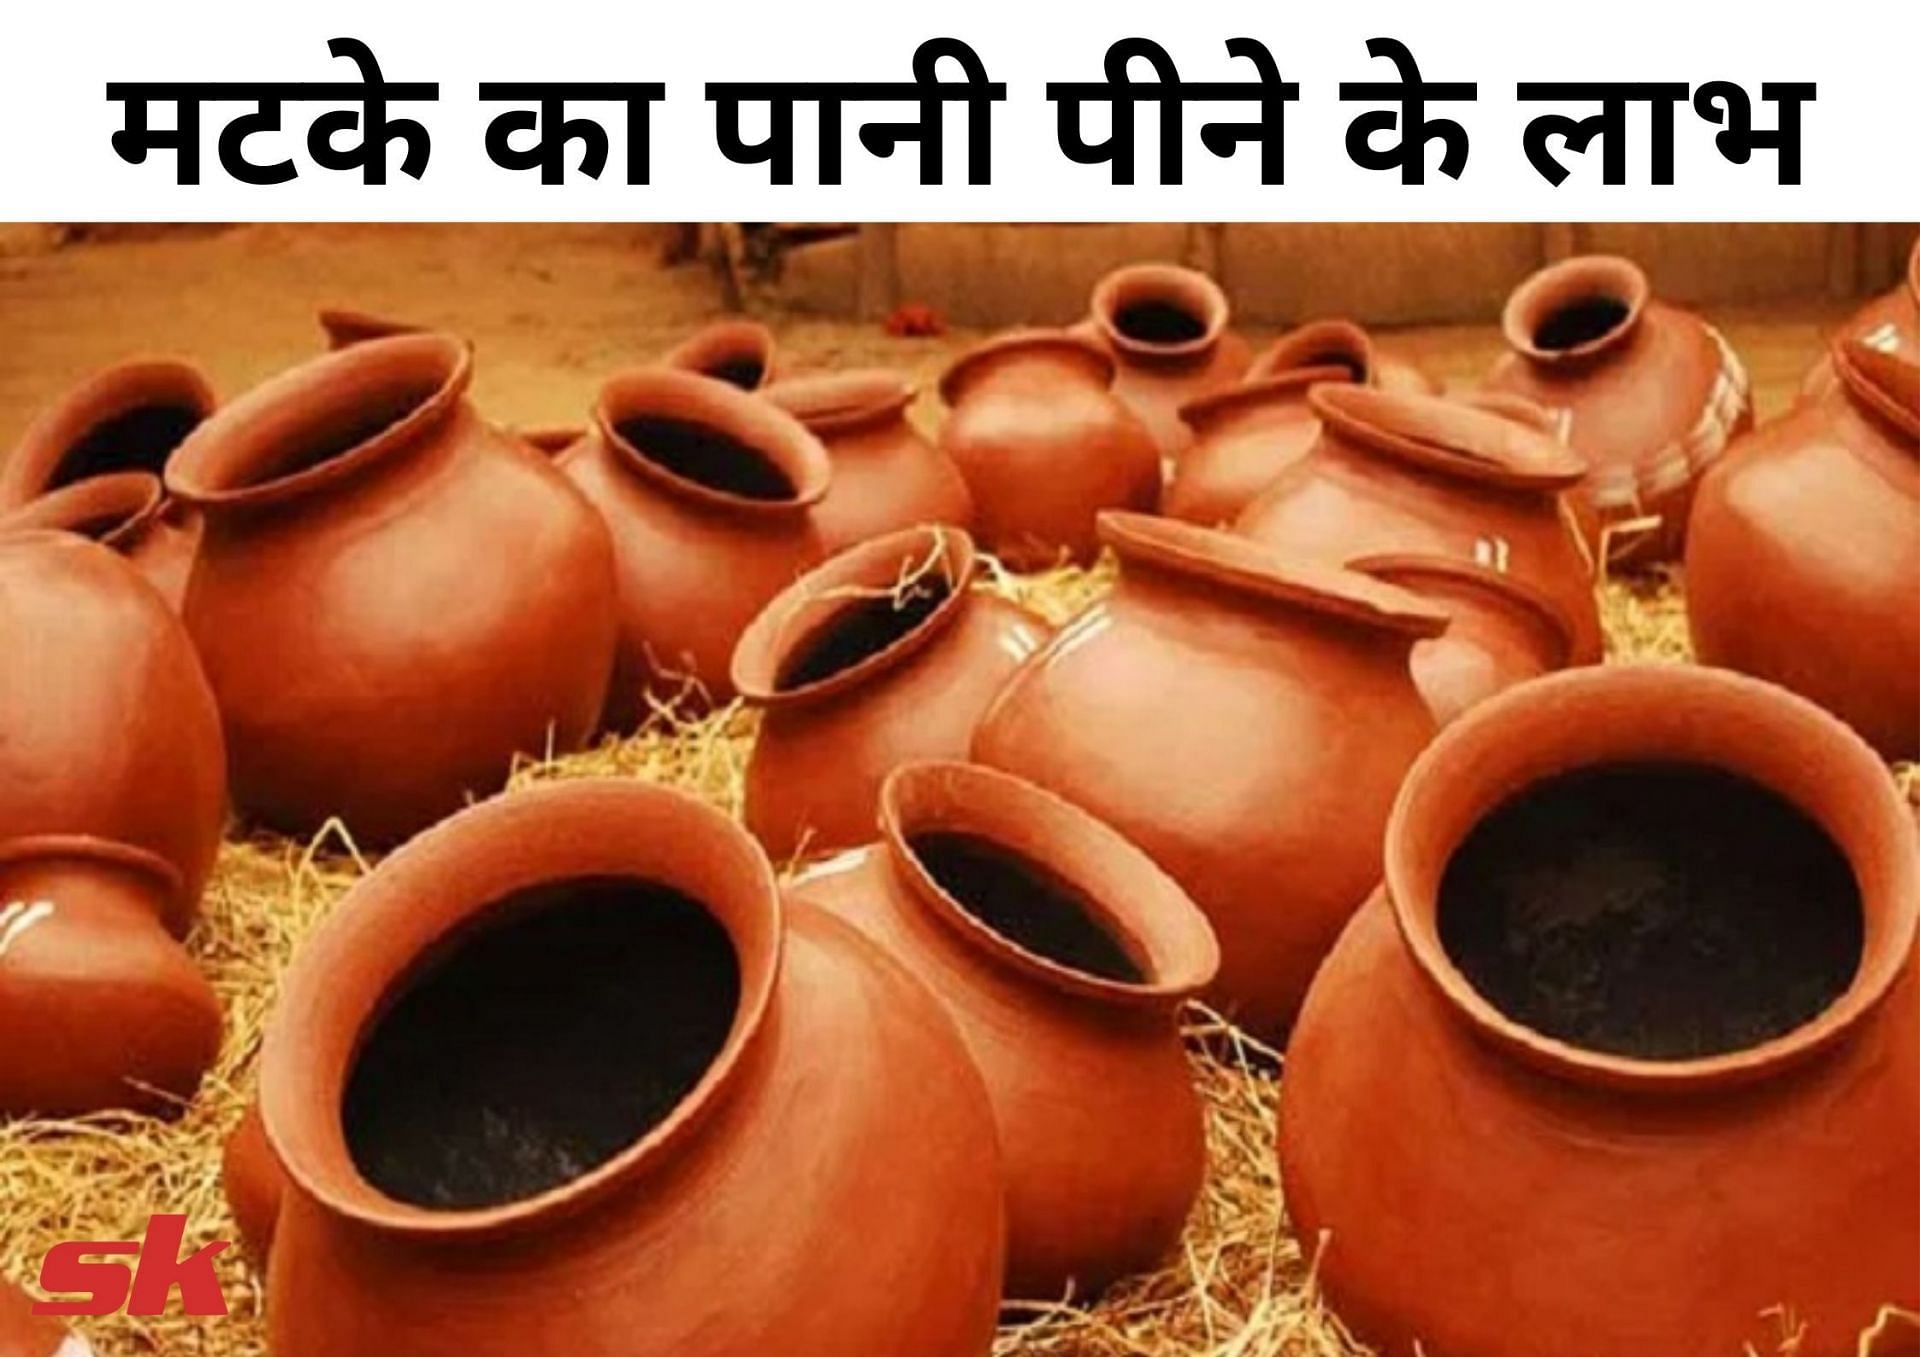 मटके का पानी पीने के लाभ (फोटो - sportskeeda hindi)